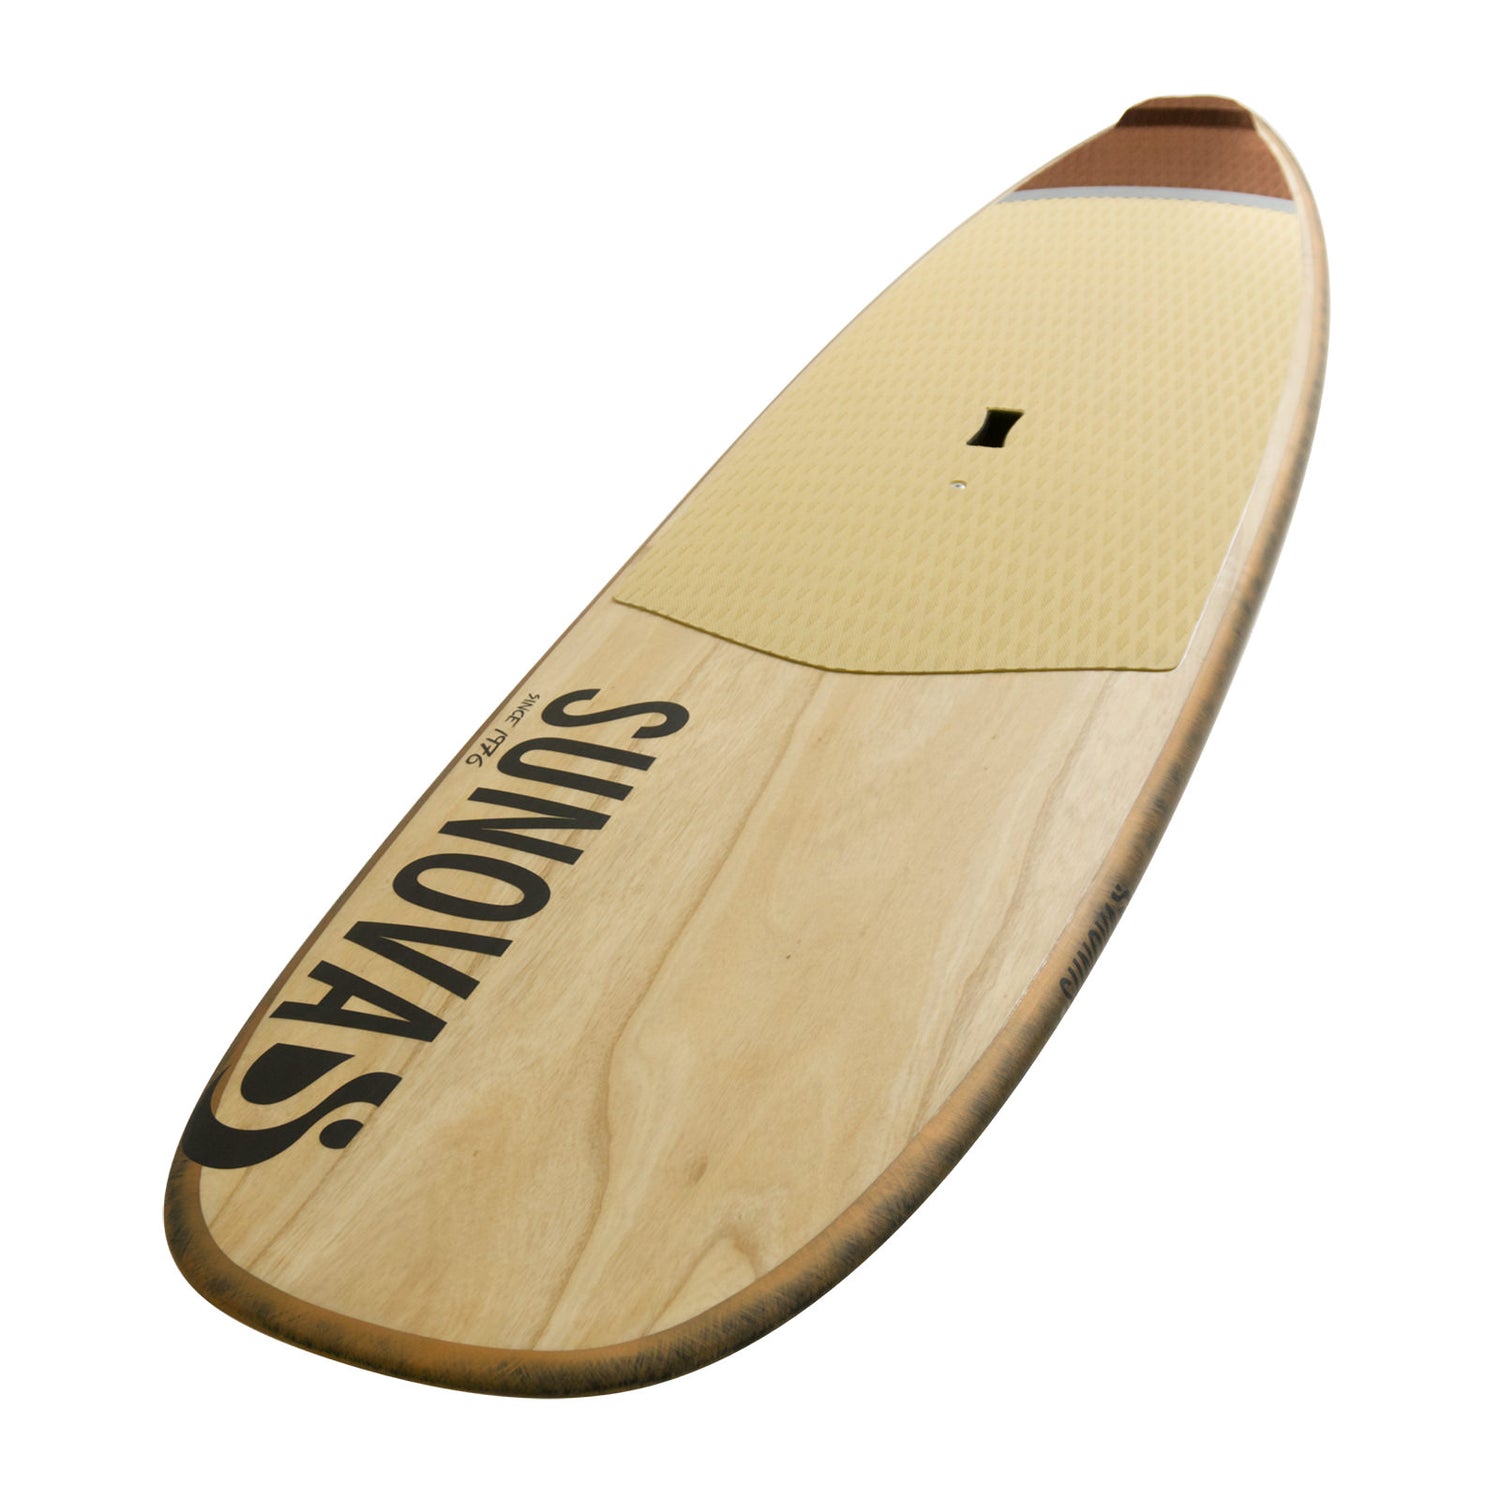 Perspektivische Ansicht des Sunova Style Wave SUP Board in der TR3 Bauweise.